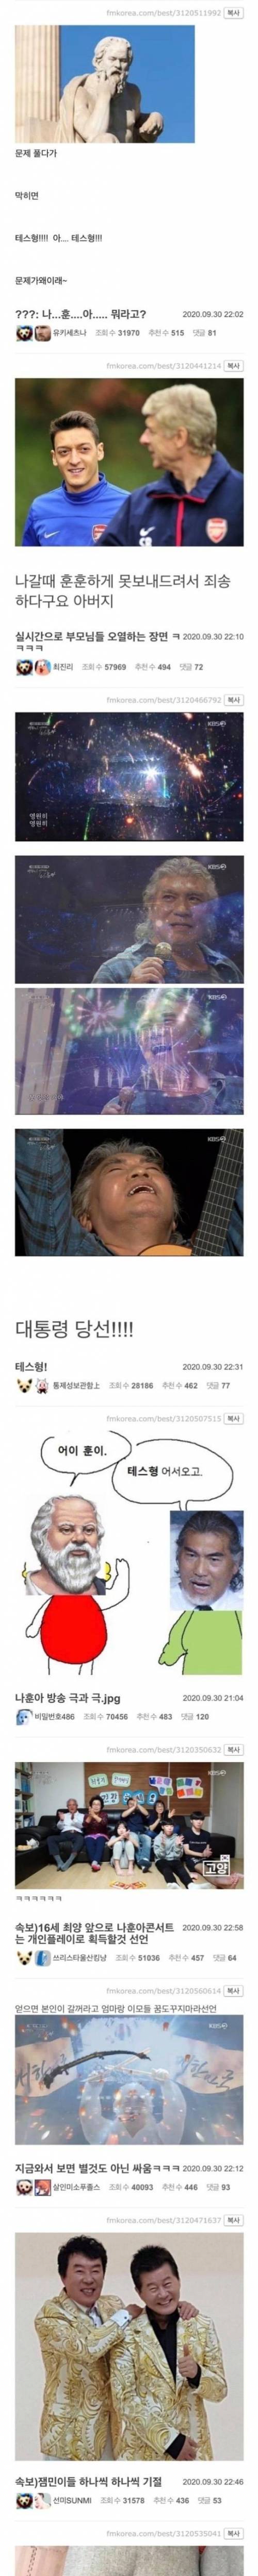 [스압] 나훈아 콘서트 관련 드립 모음.jpg